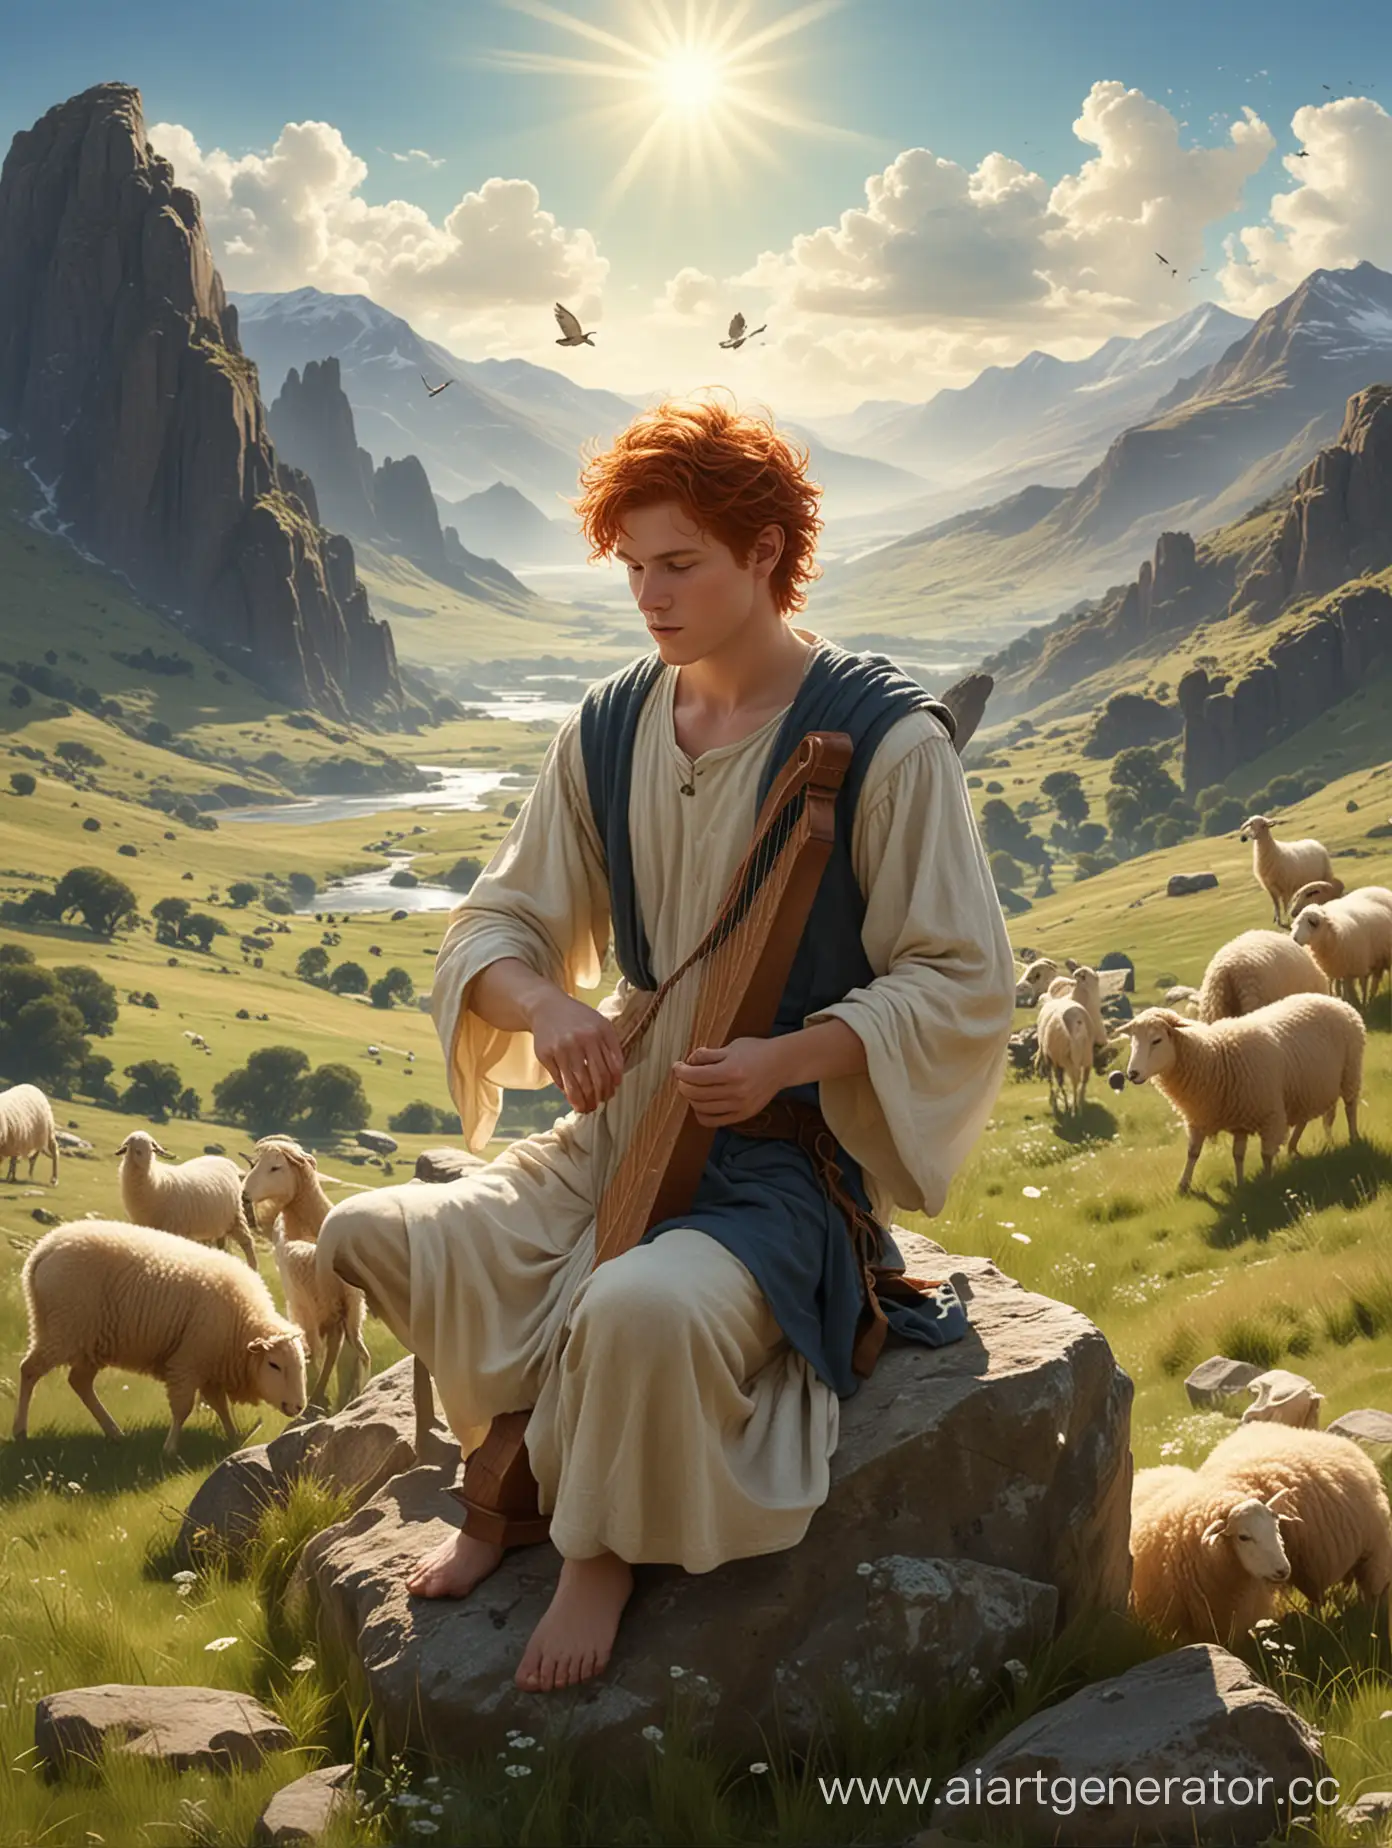 Создай Давида,библейского персонажа, рыжеволосого ,худощавого юношу с арфой в руках,который сидит на камне и мелодично играет на ней от души.Его волосы ослепляет солнце, он в одежде пастуха,рядом лежит посох и мирно пасутся овцы на блестящей от росы траве,вдали виднеются холмы и горы, течет река,в голубом  небе летят 